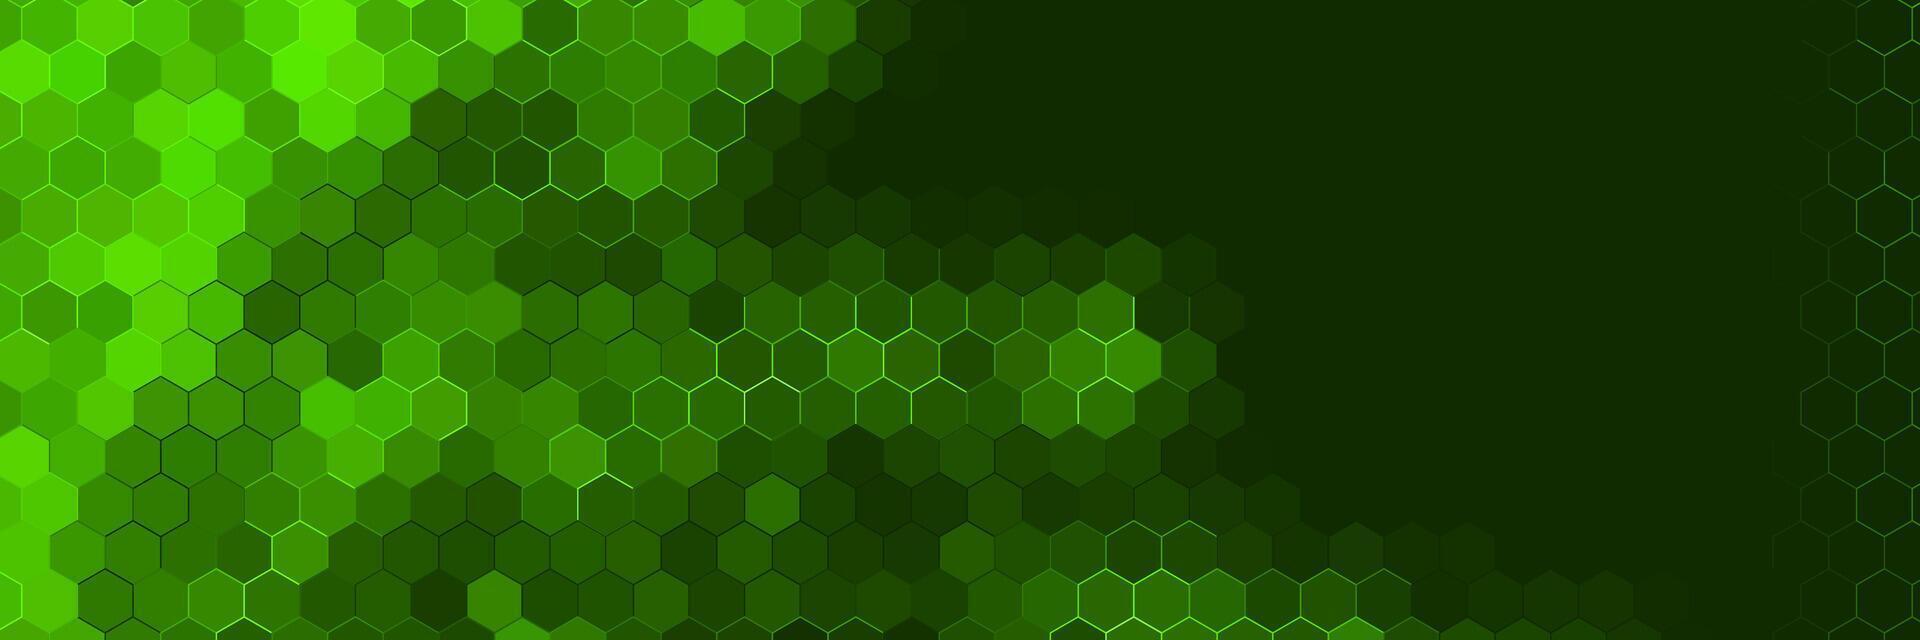 mörk grön trogen teknologi bakgrund med färgrik hex mönster vektor